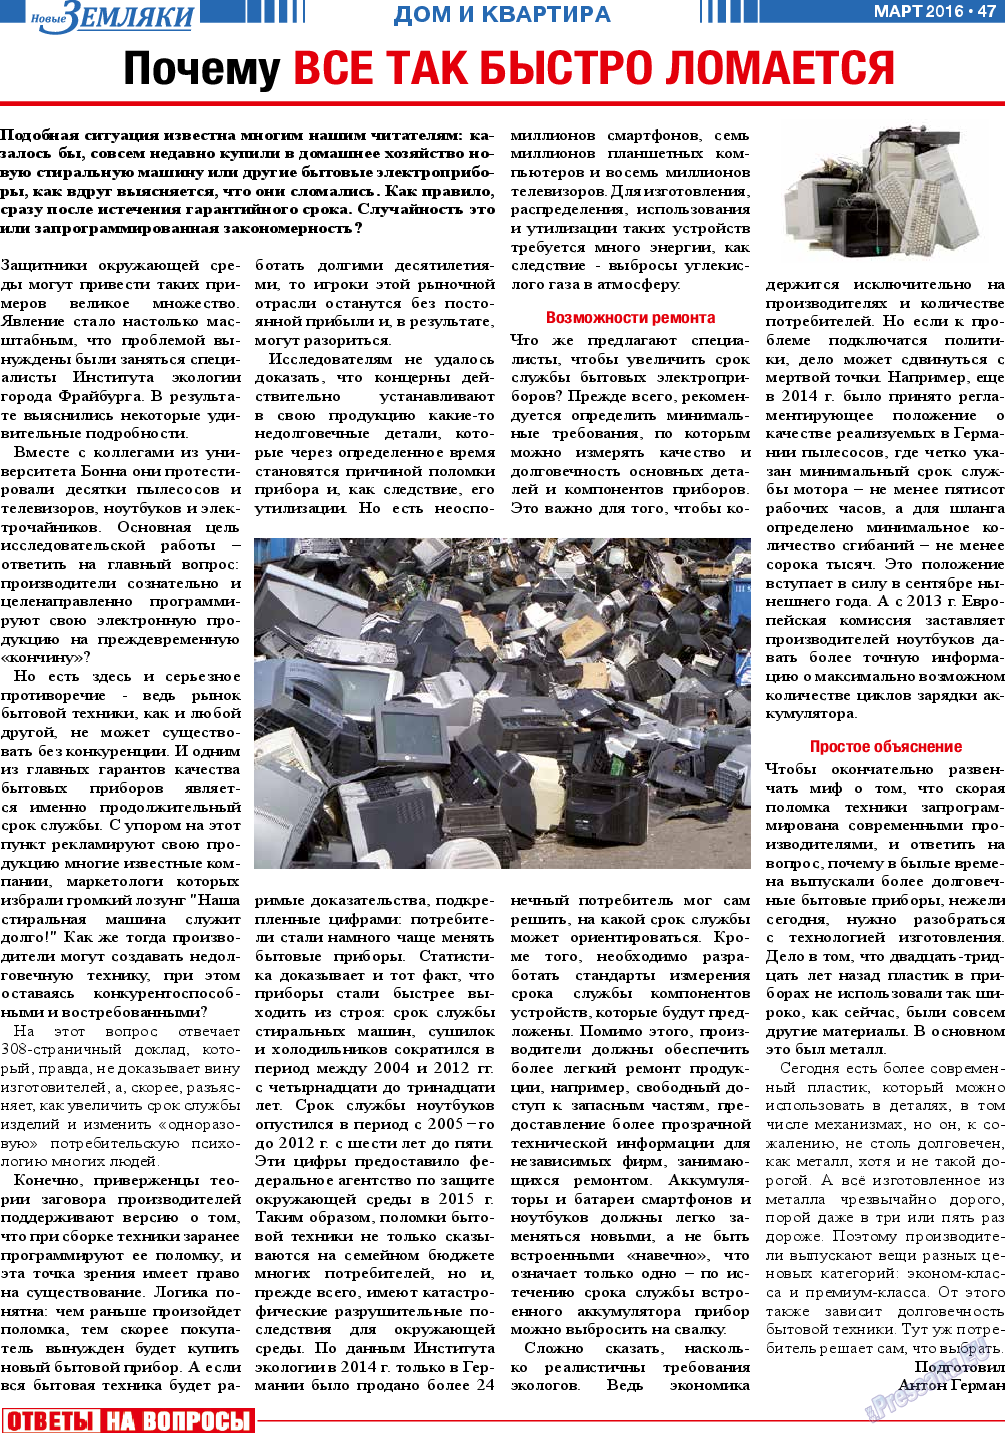 Новые Земляки (газета). 2016 год, номер 3, стр. 47